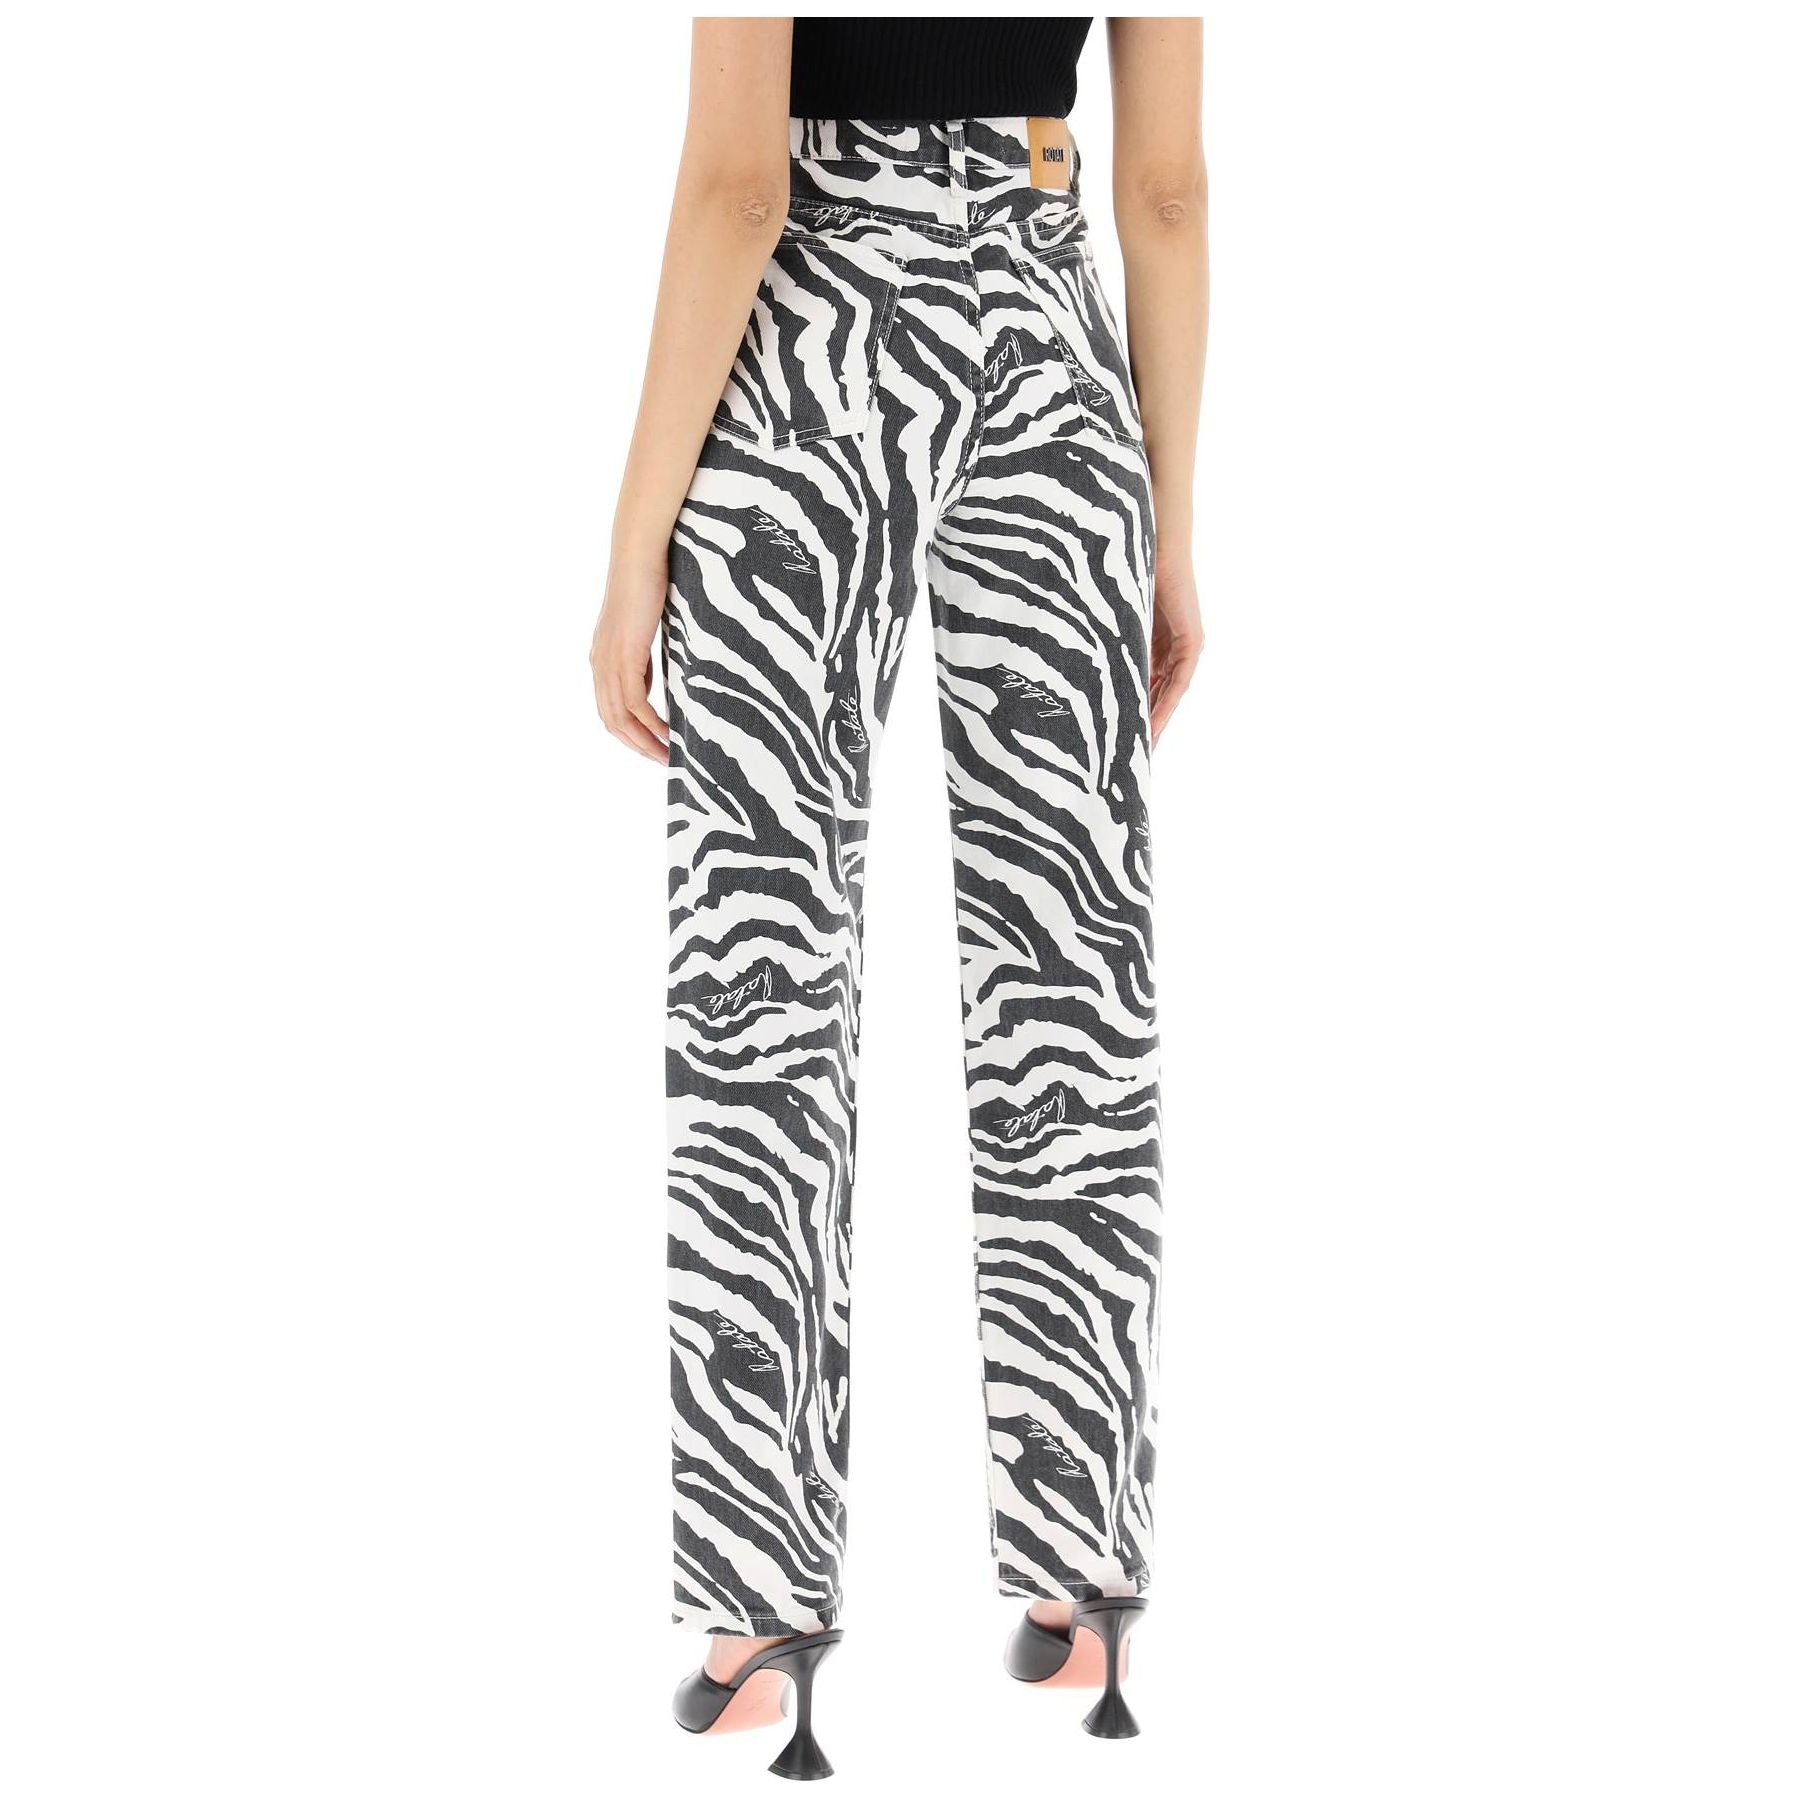 Straight Leg Zebra Print Jeans